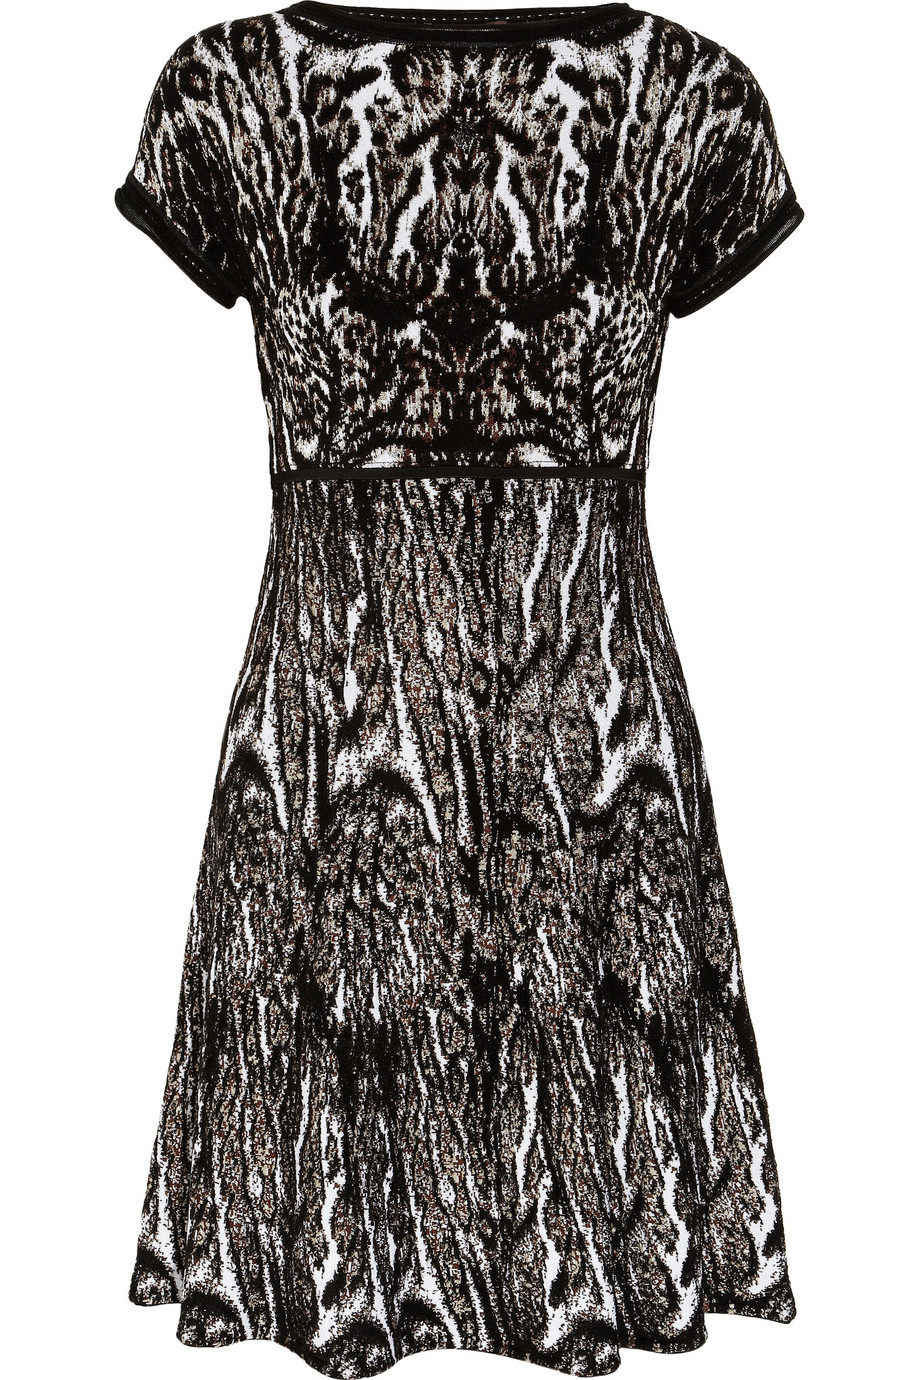 Roberto cavalli Animalprint Jacquardknit Dress in Black | Lyst